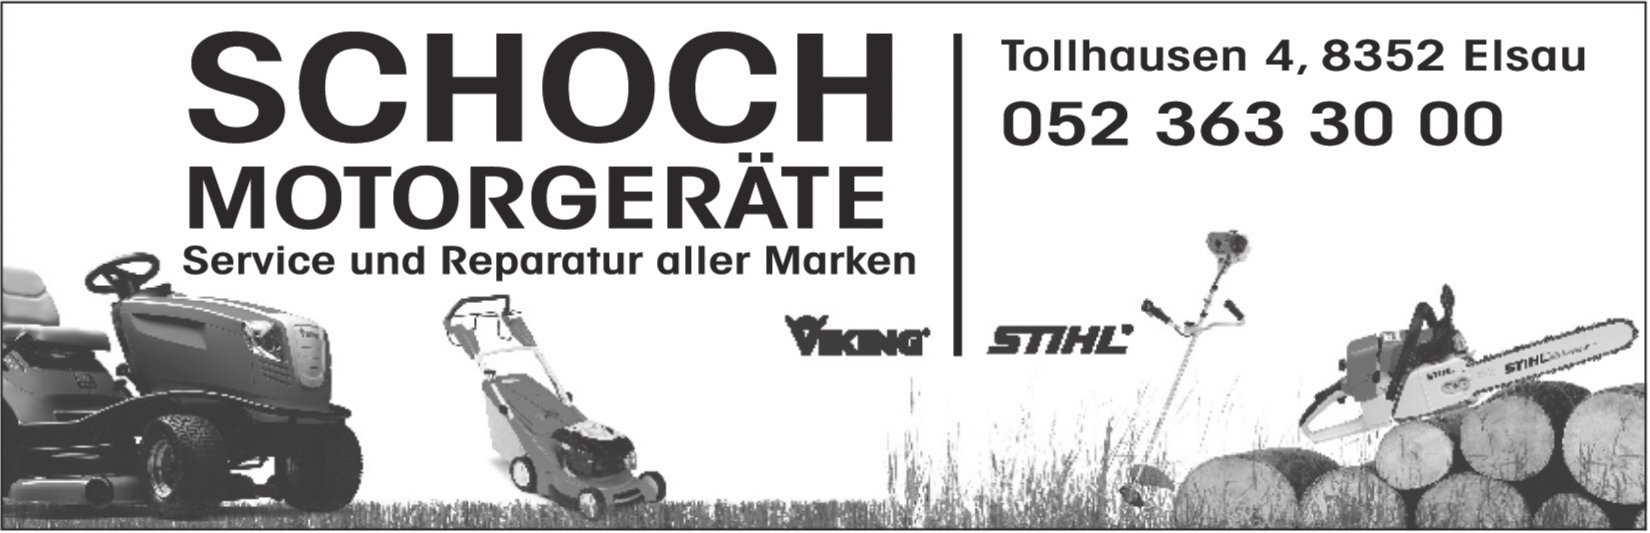 Schoch Motorgeräte, Elsau - Service und Reparatur aller Marken